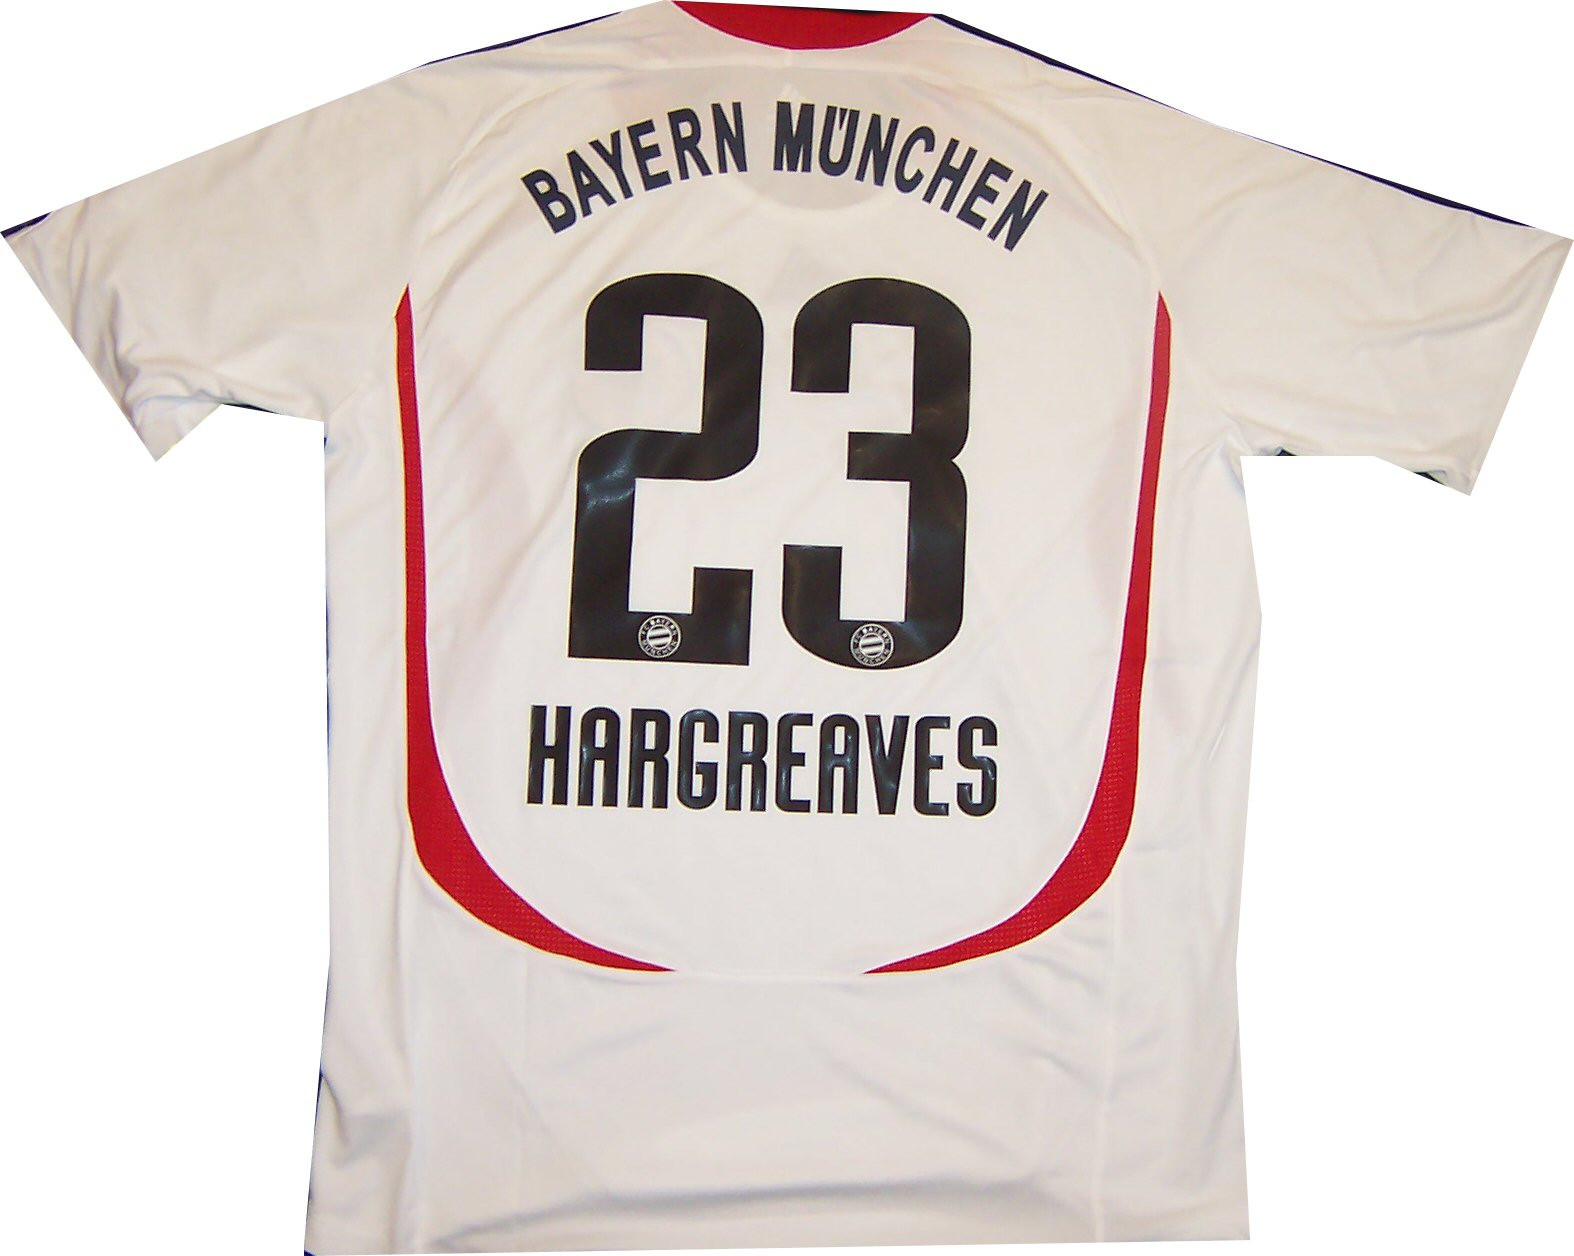 Adidas 07-08 Bayern Munich away (Hargreaves 23)